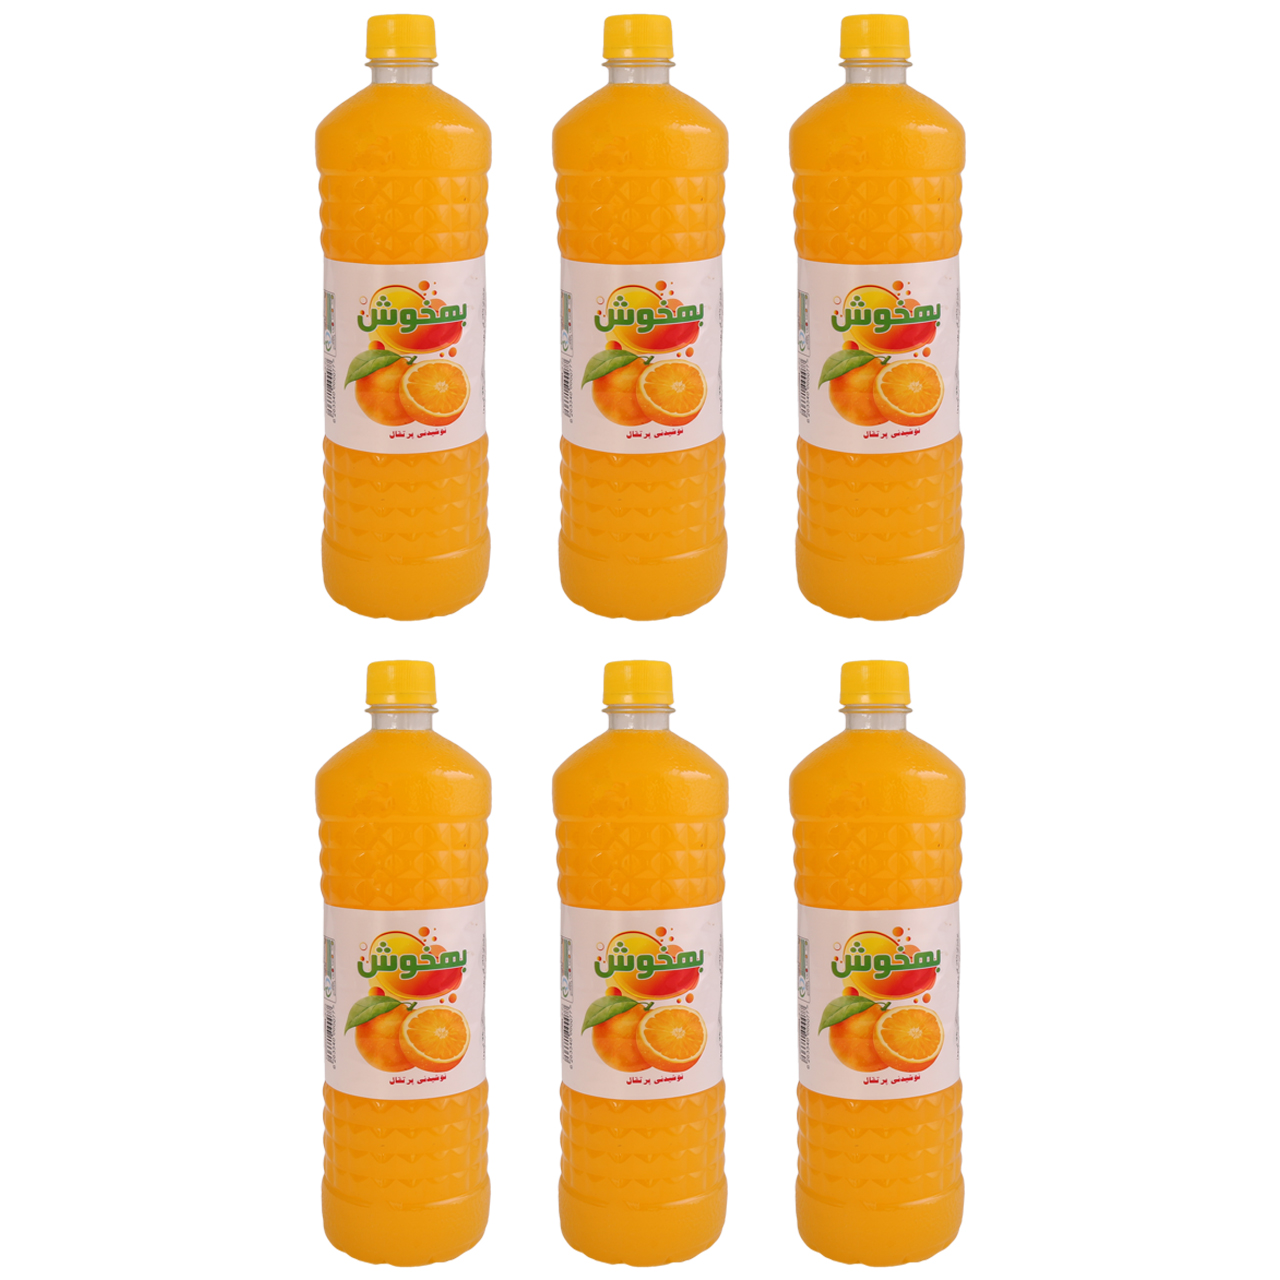 نوشیدنی پرتقال بهخوش - 1 لیتر بسته 6 عددی